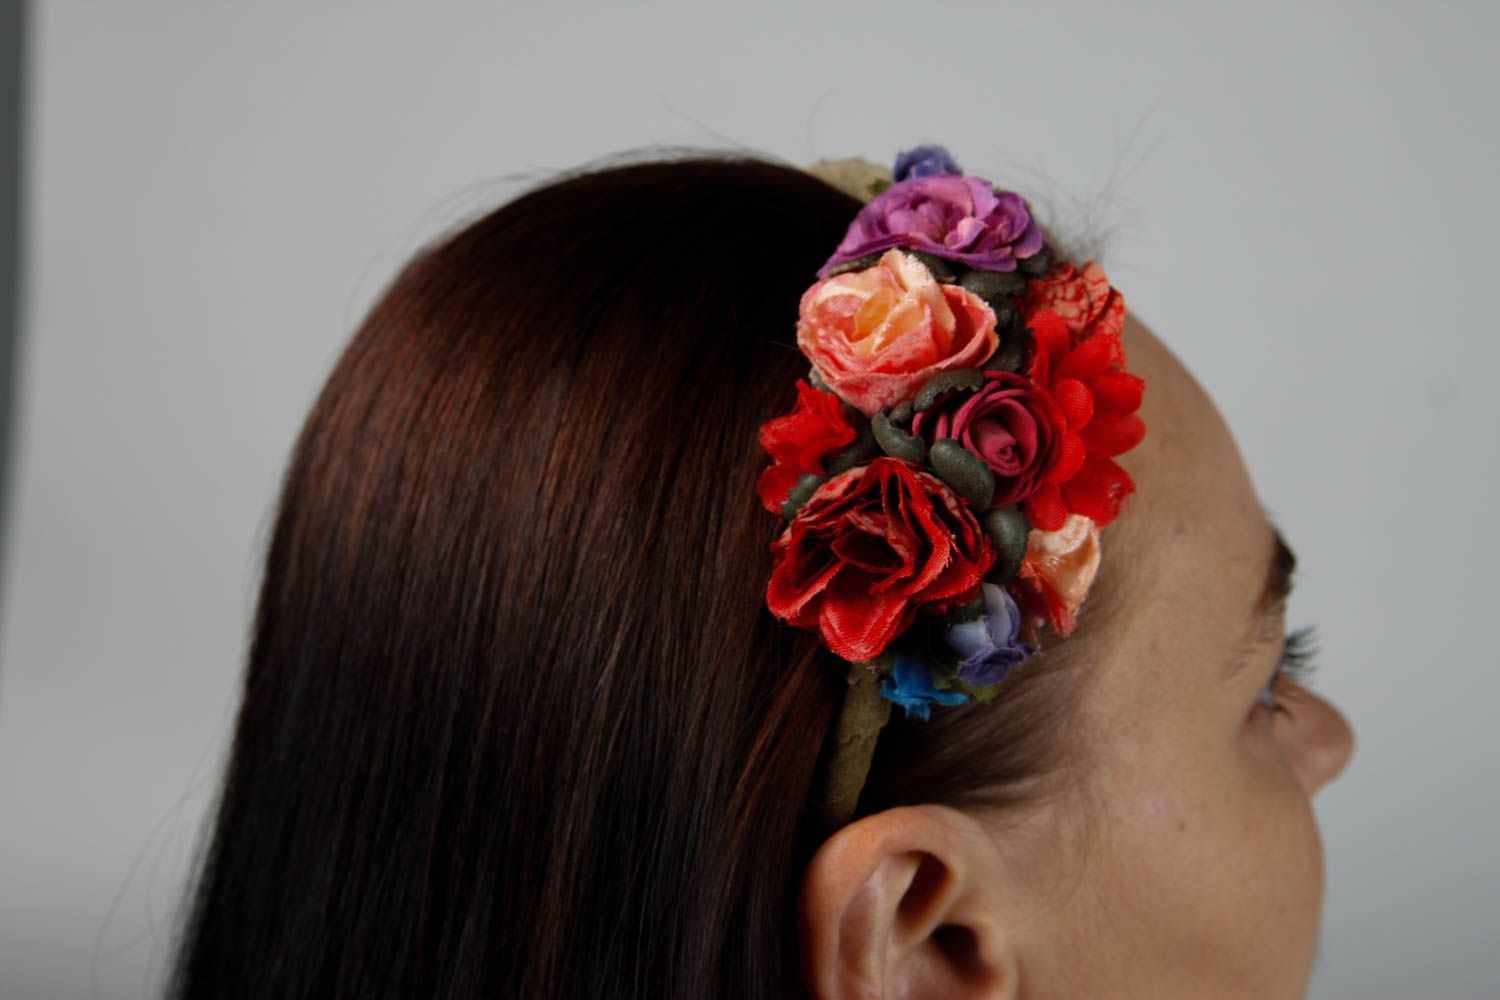 Аксессуар для волос ручной работы обруч на голову женский аксессуар с цветами фото 2